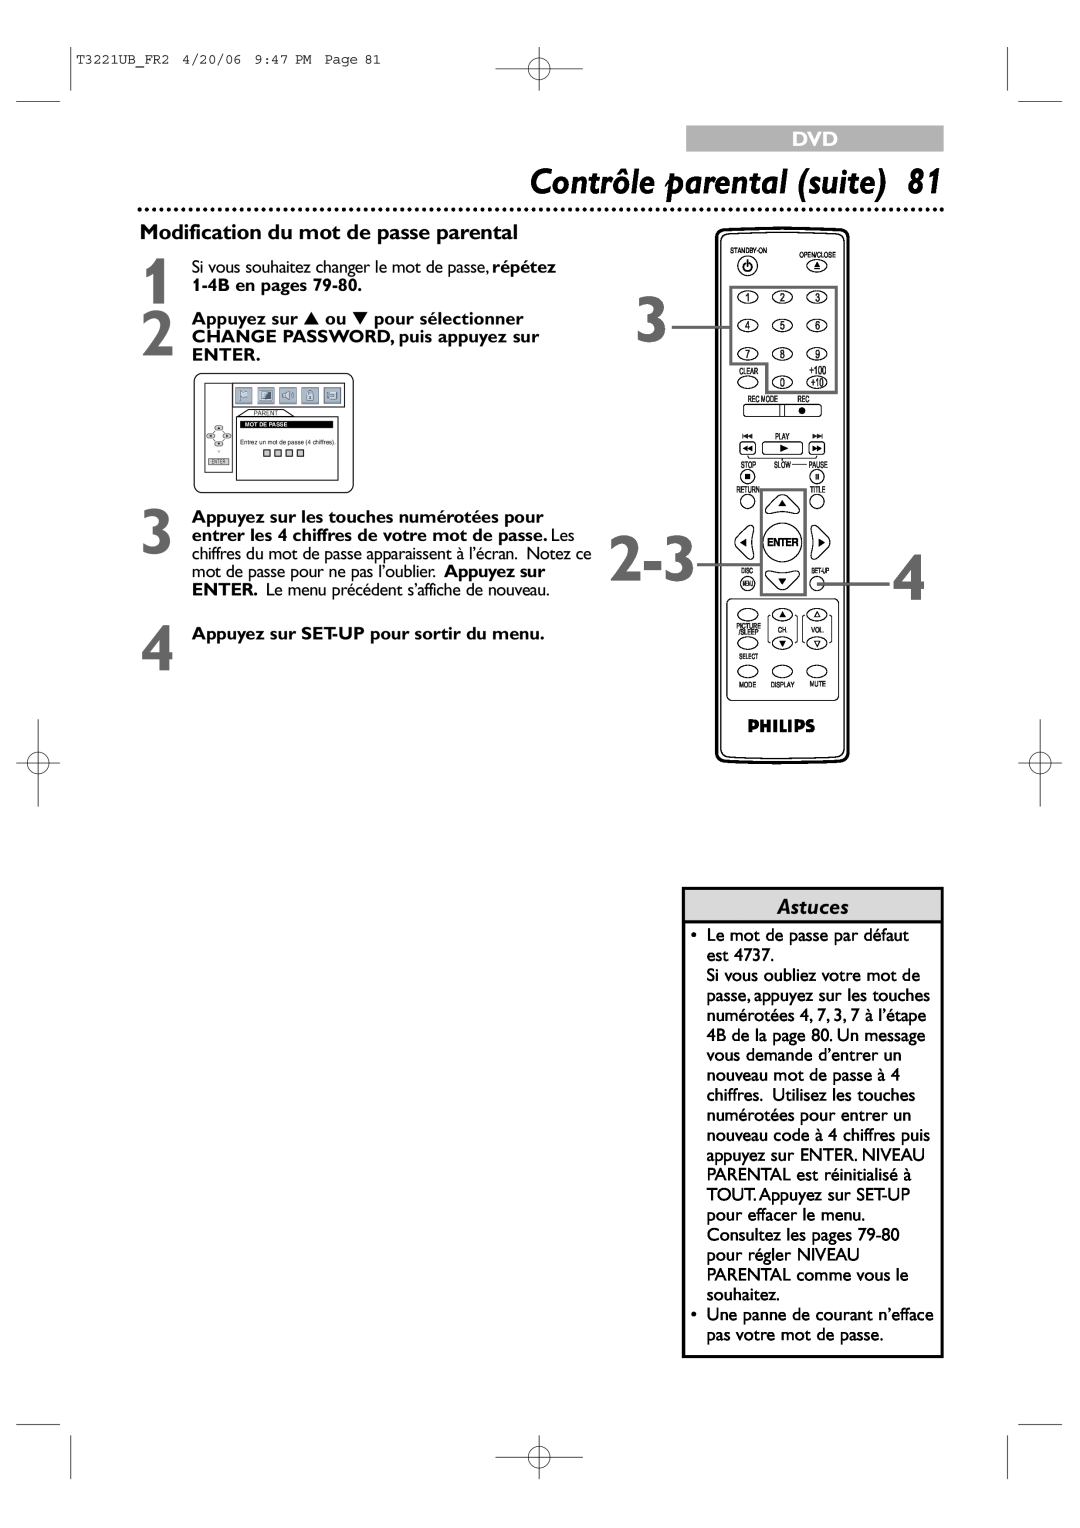 Philips 27PC4326/37 quick start Contrôle parental suite, Modification du mot de passe parental, 1-4B en pages, Astuces 